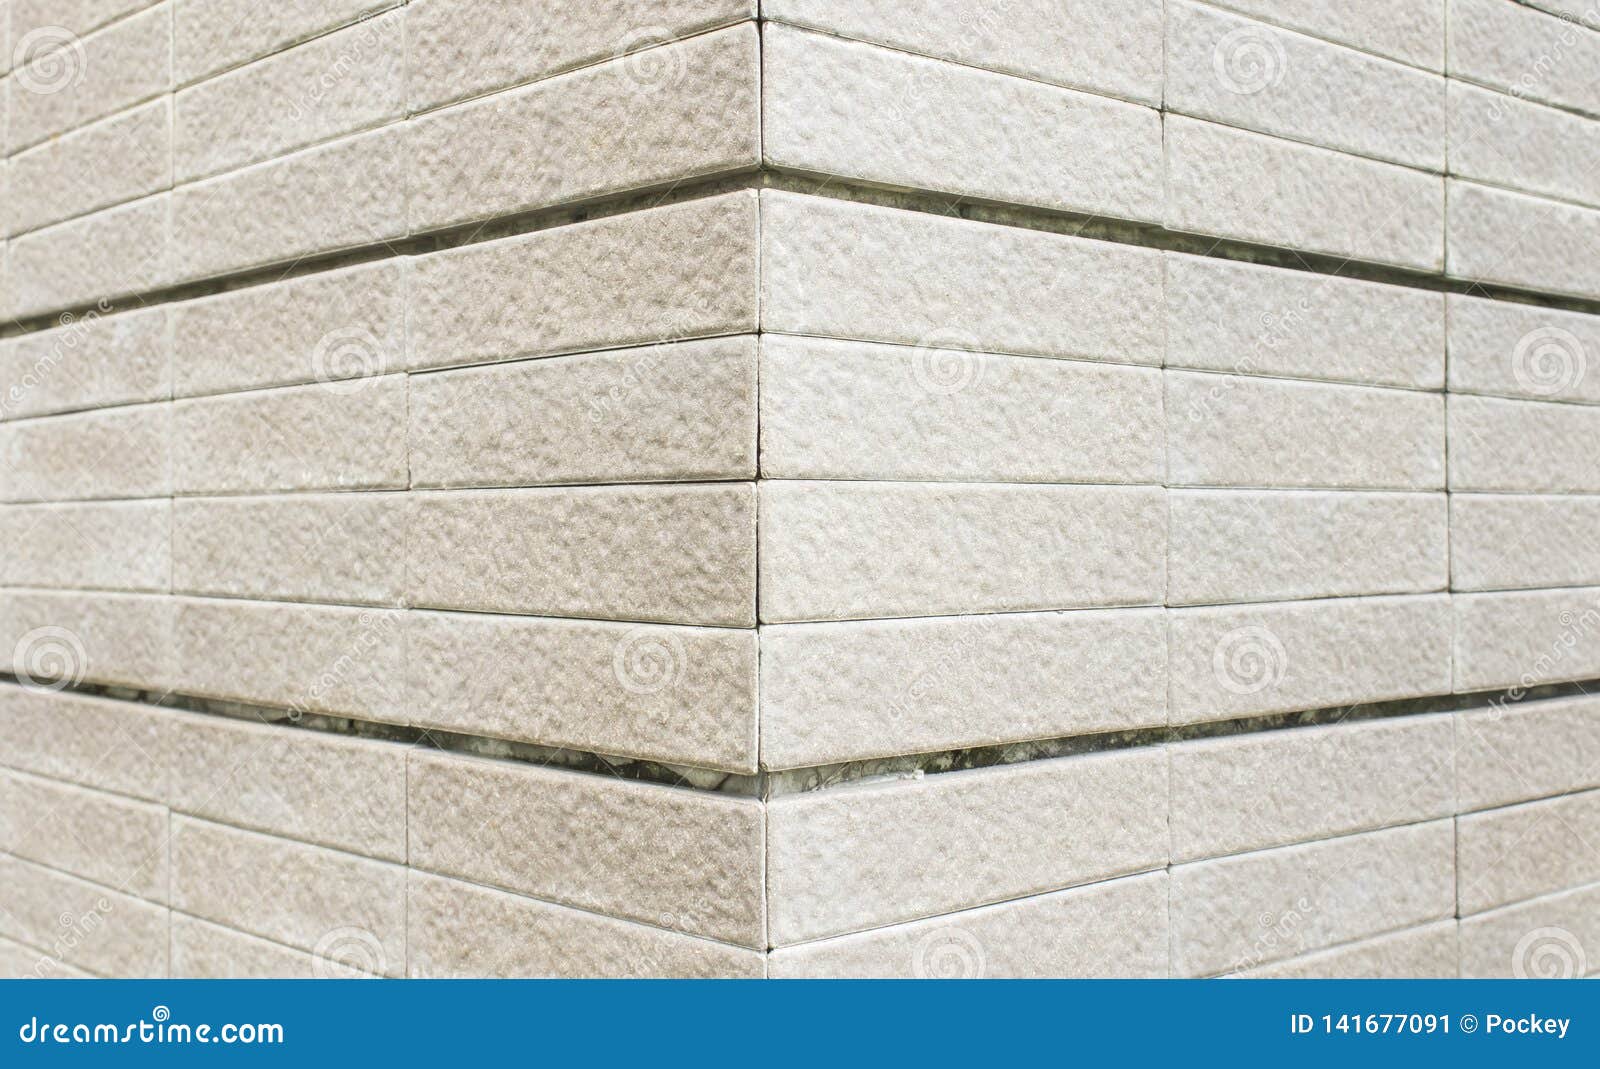 Closeup External Wall Tiles Texture Stock Image - Image of design ...